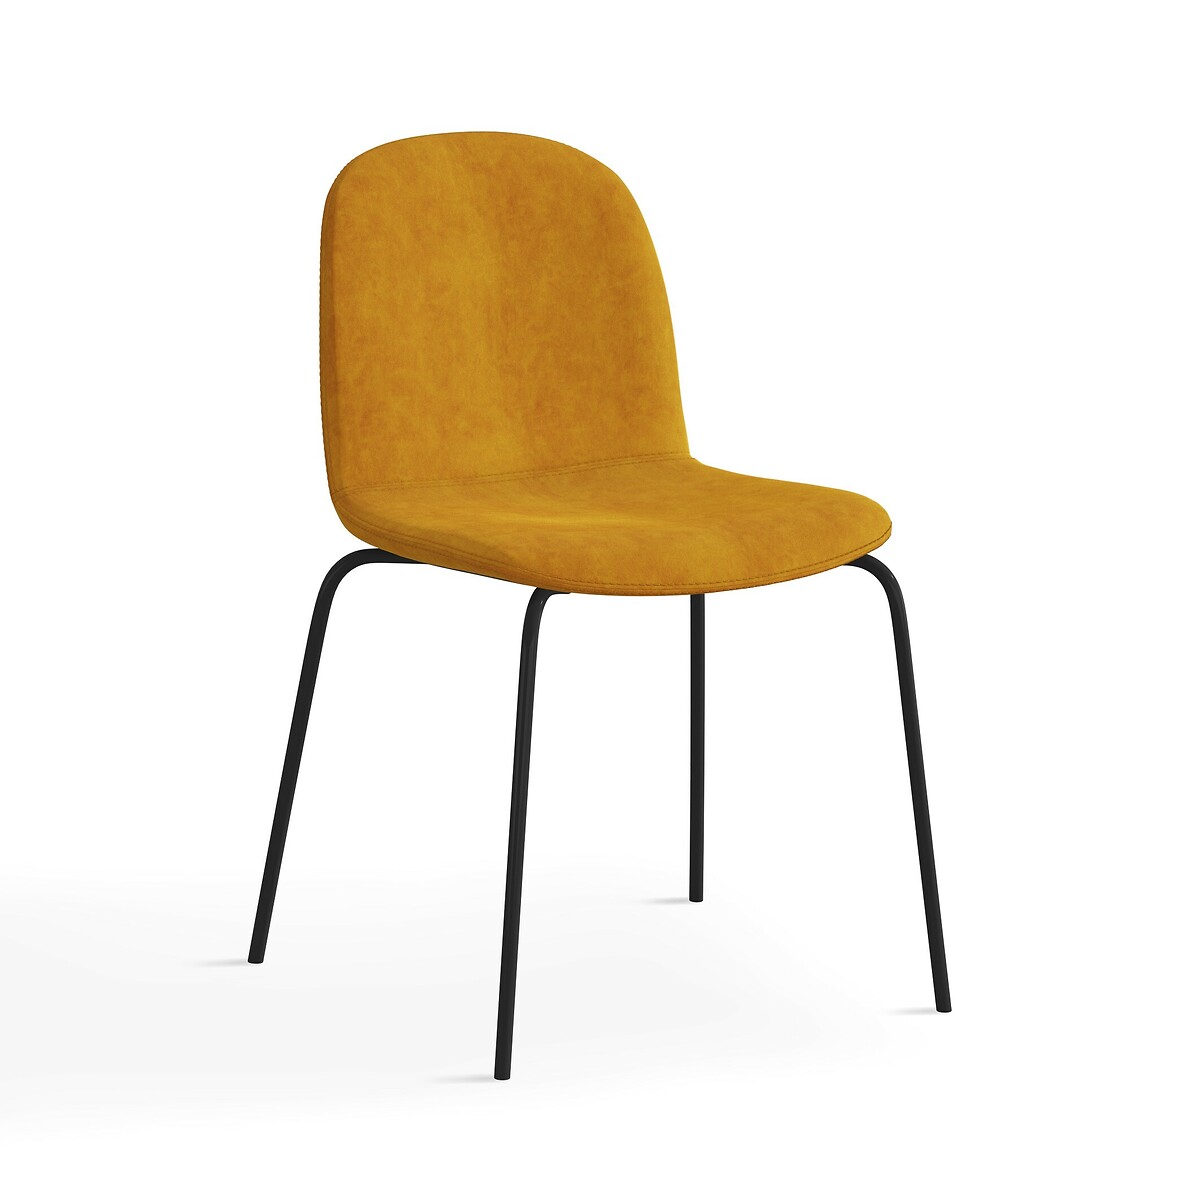 Стул из велюра Tibby единый размер желтый стул из велюра с опалинами tibby единый размер серый